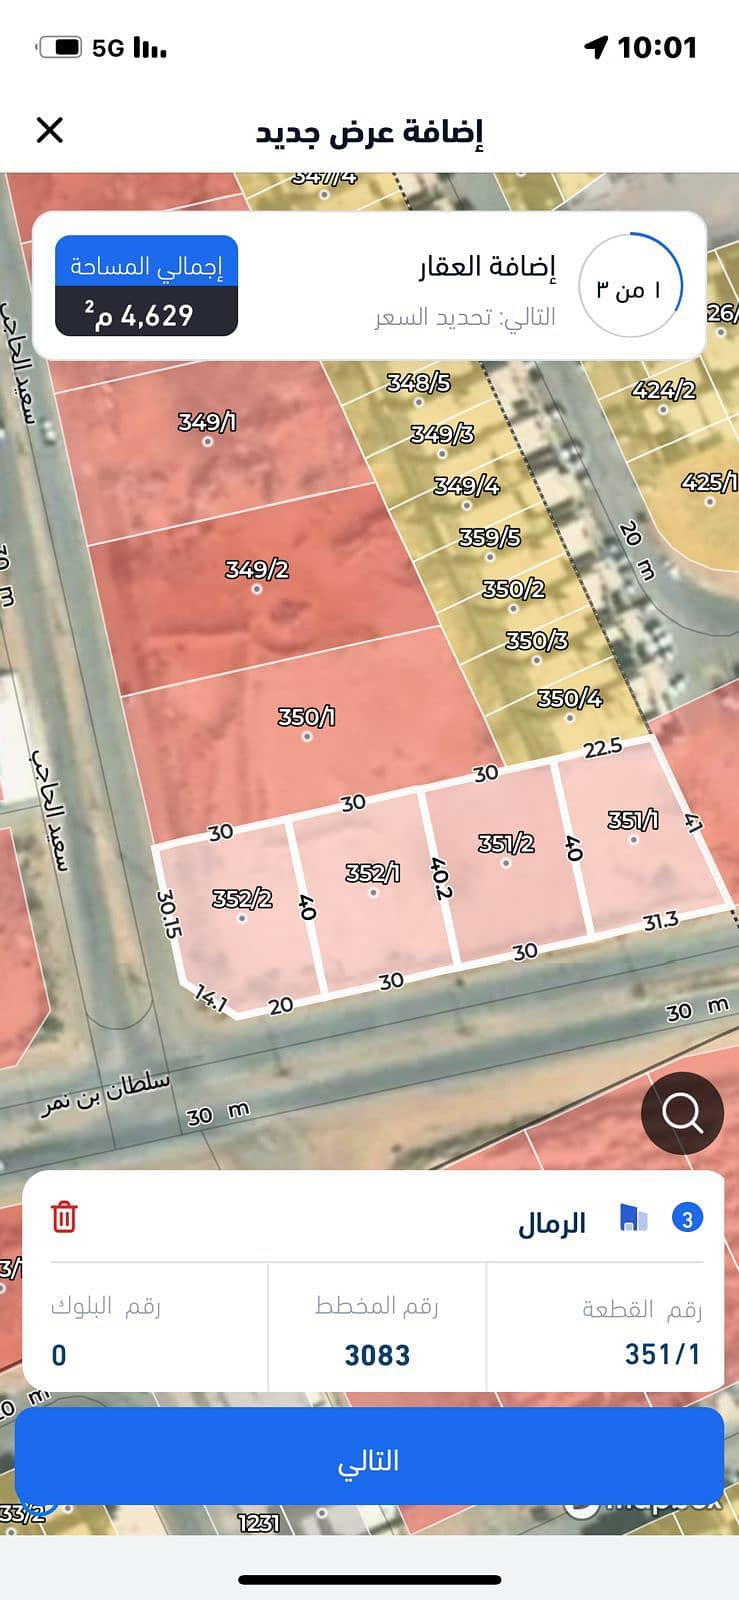 للبيع ارض تجارية، حي الرمال شرق الرياض